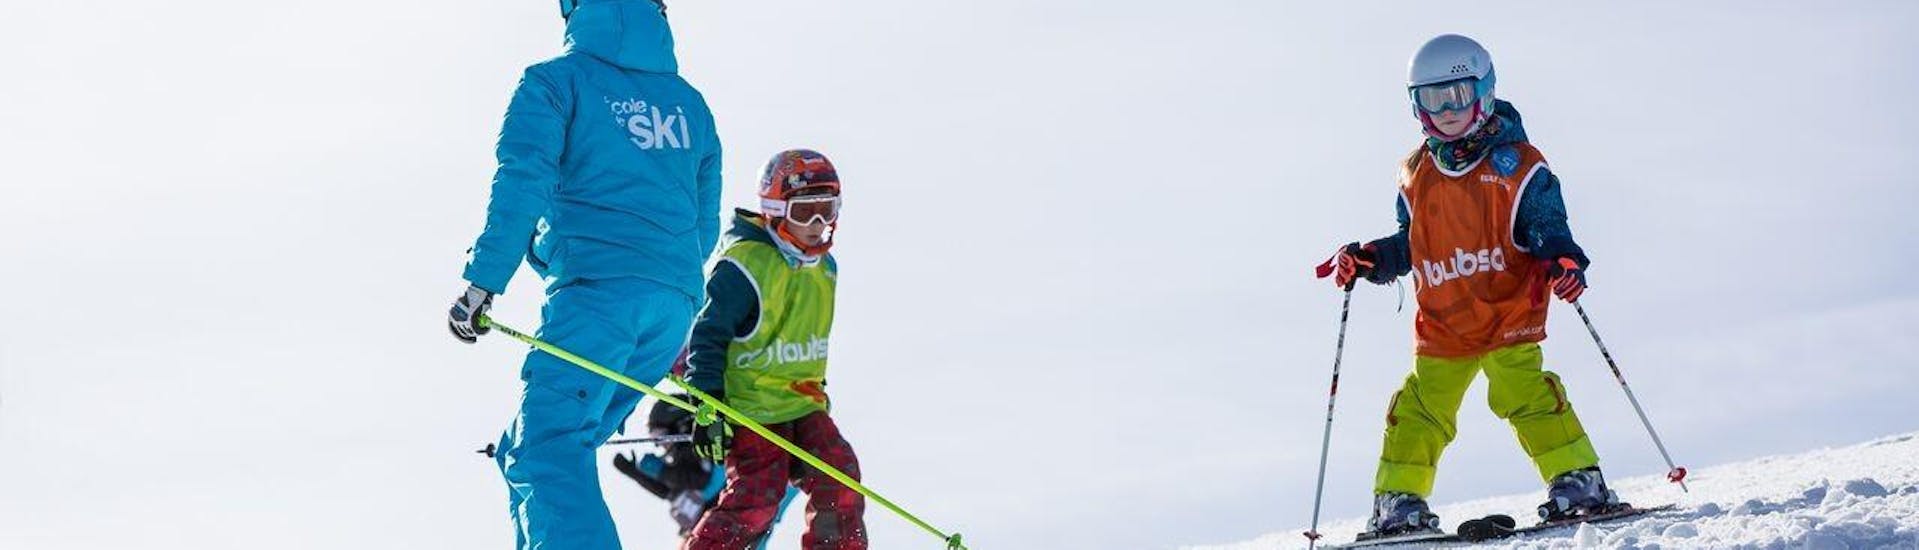 Des enfants prennent un Cours de ski Enfants (6-13 ans)  - Basse saison avec ESI St Christophe Les Deux Alpes. 